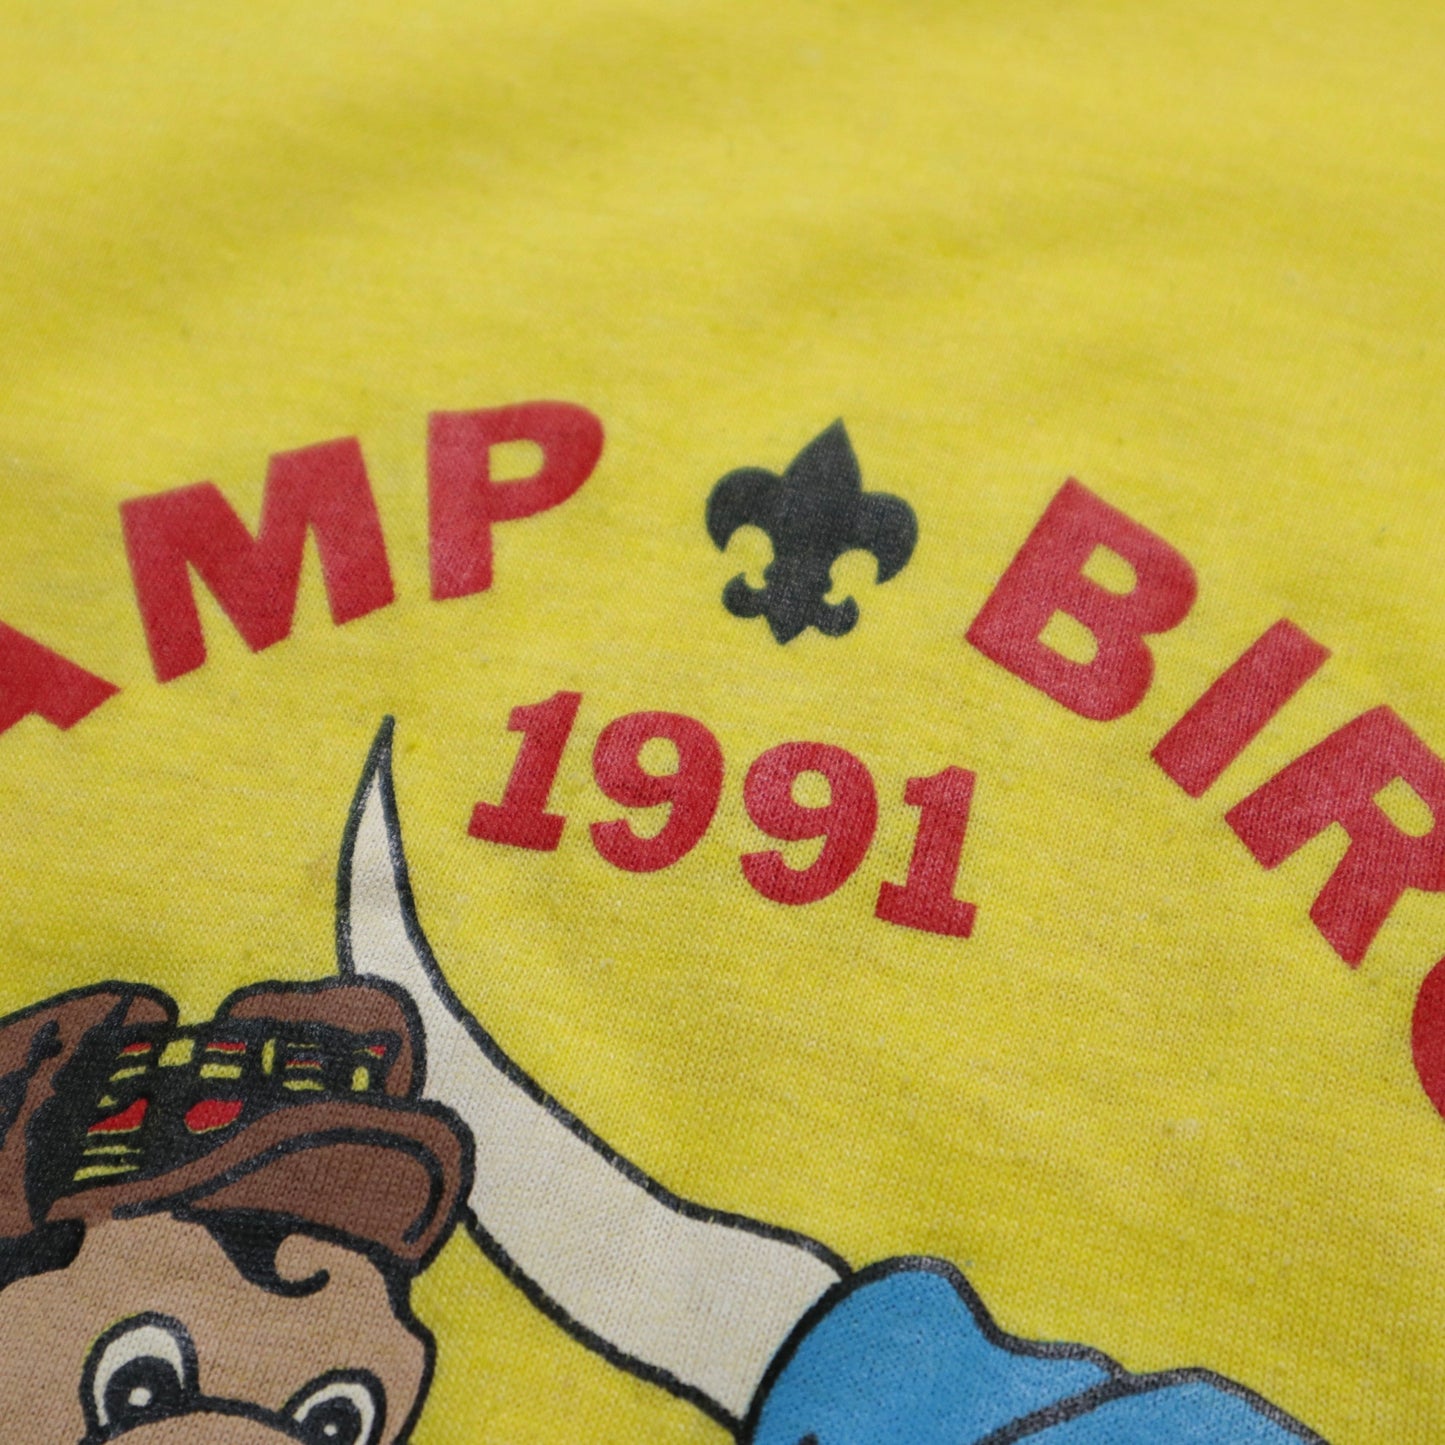 1991 美國製 Camp Birch 黃色膠印tee